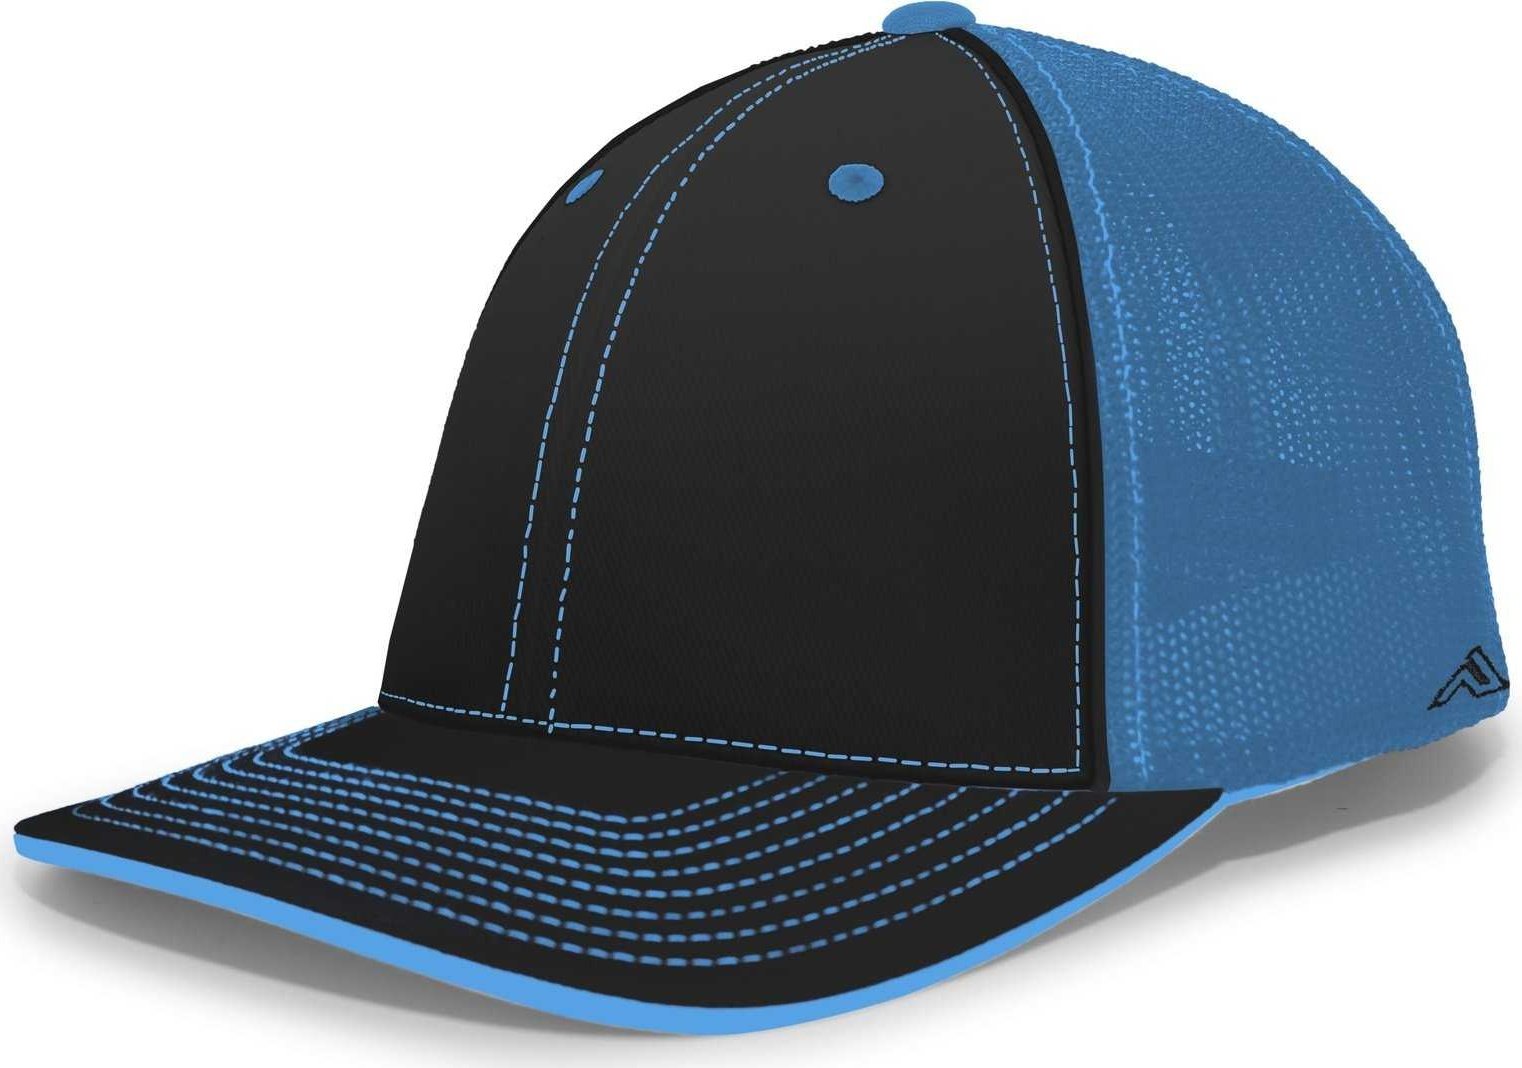 Pacific Headwear 404M Trucker Flexfit Cap - Black Neon Blue - HIT a Double